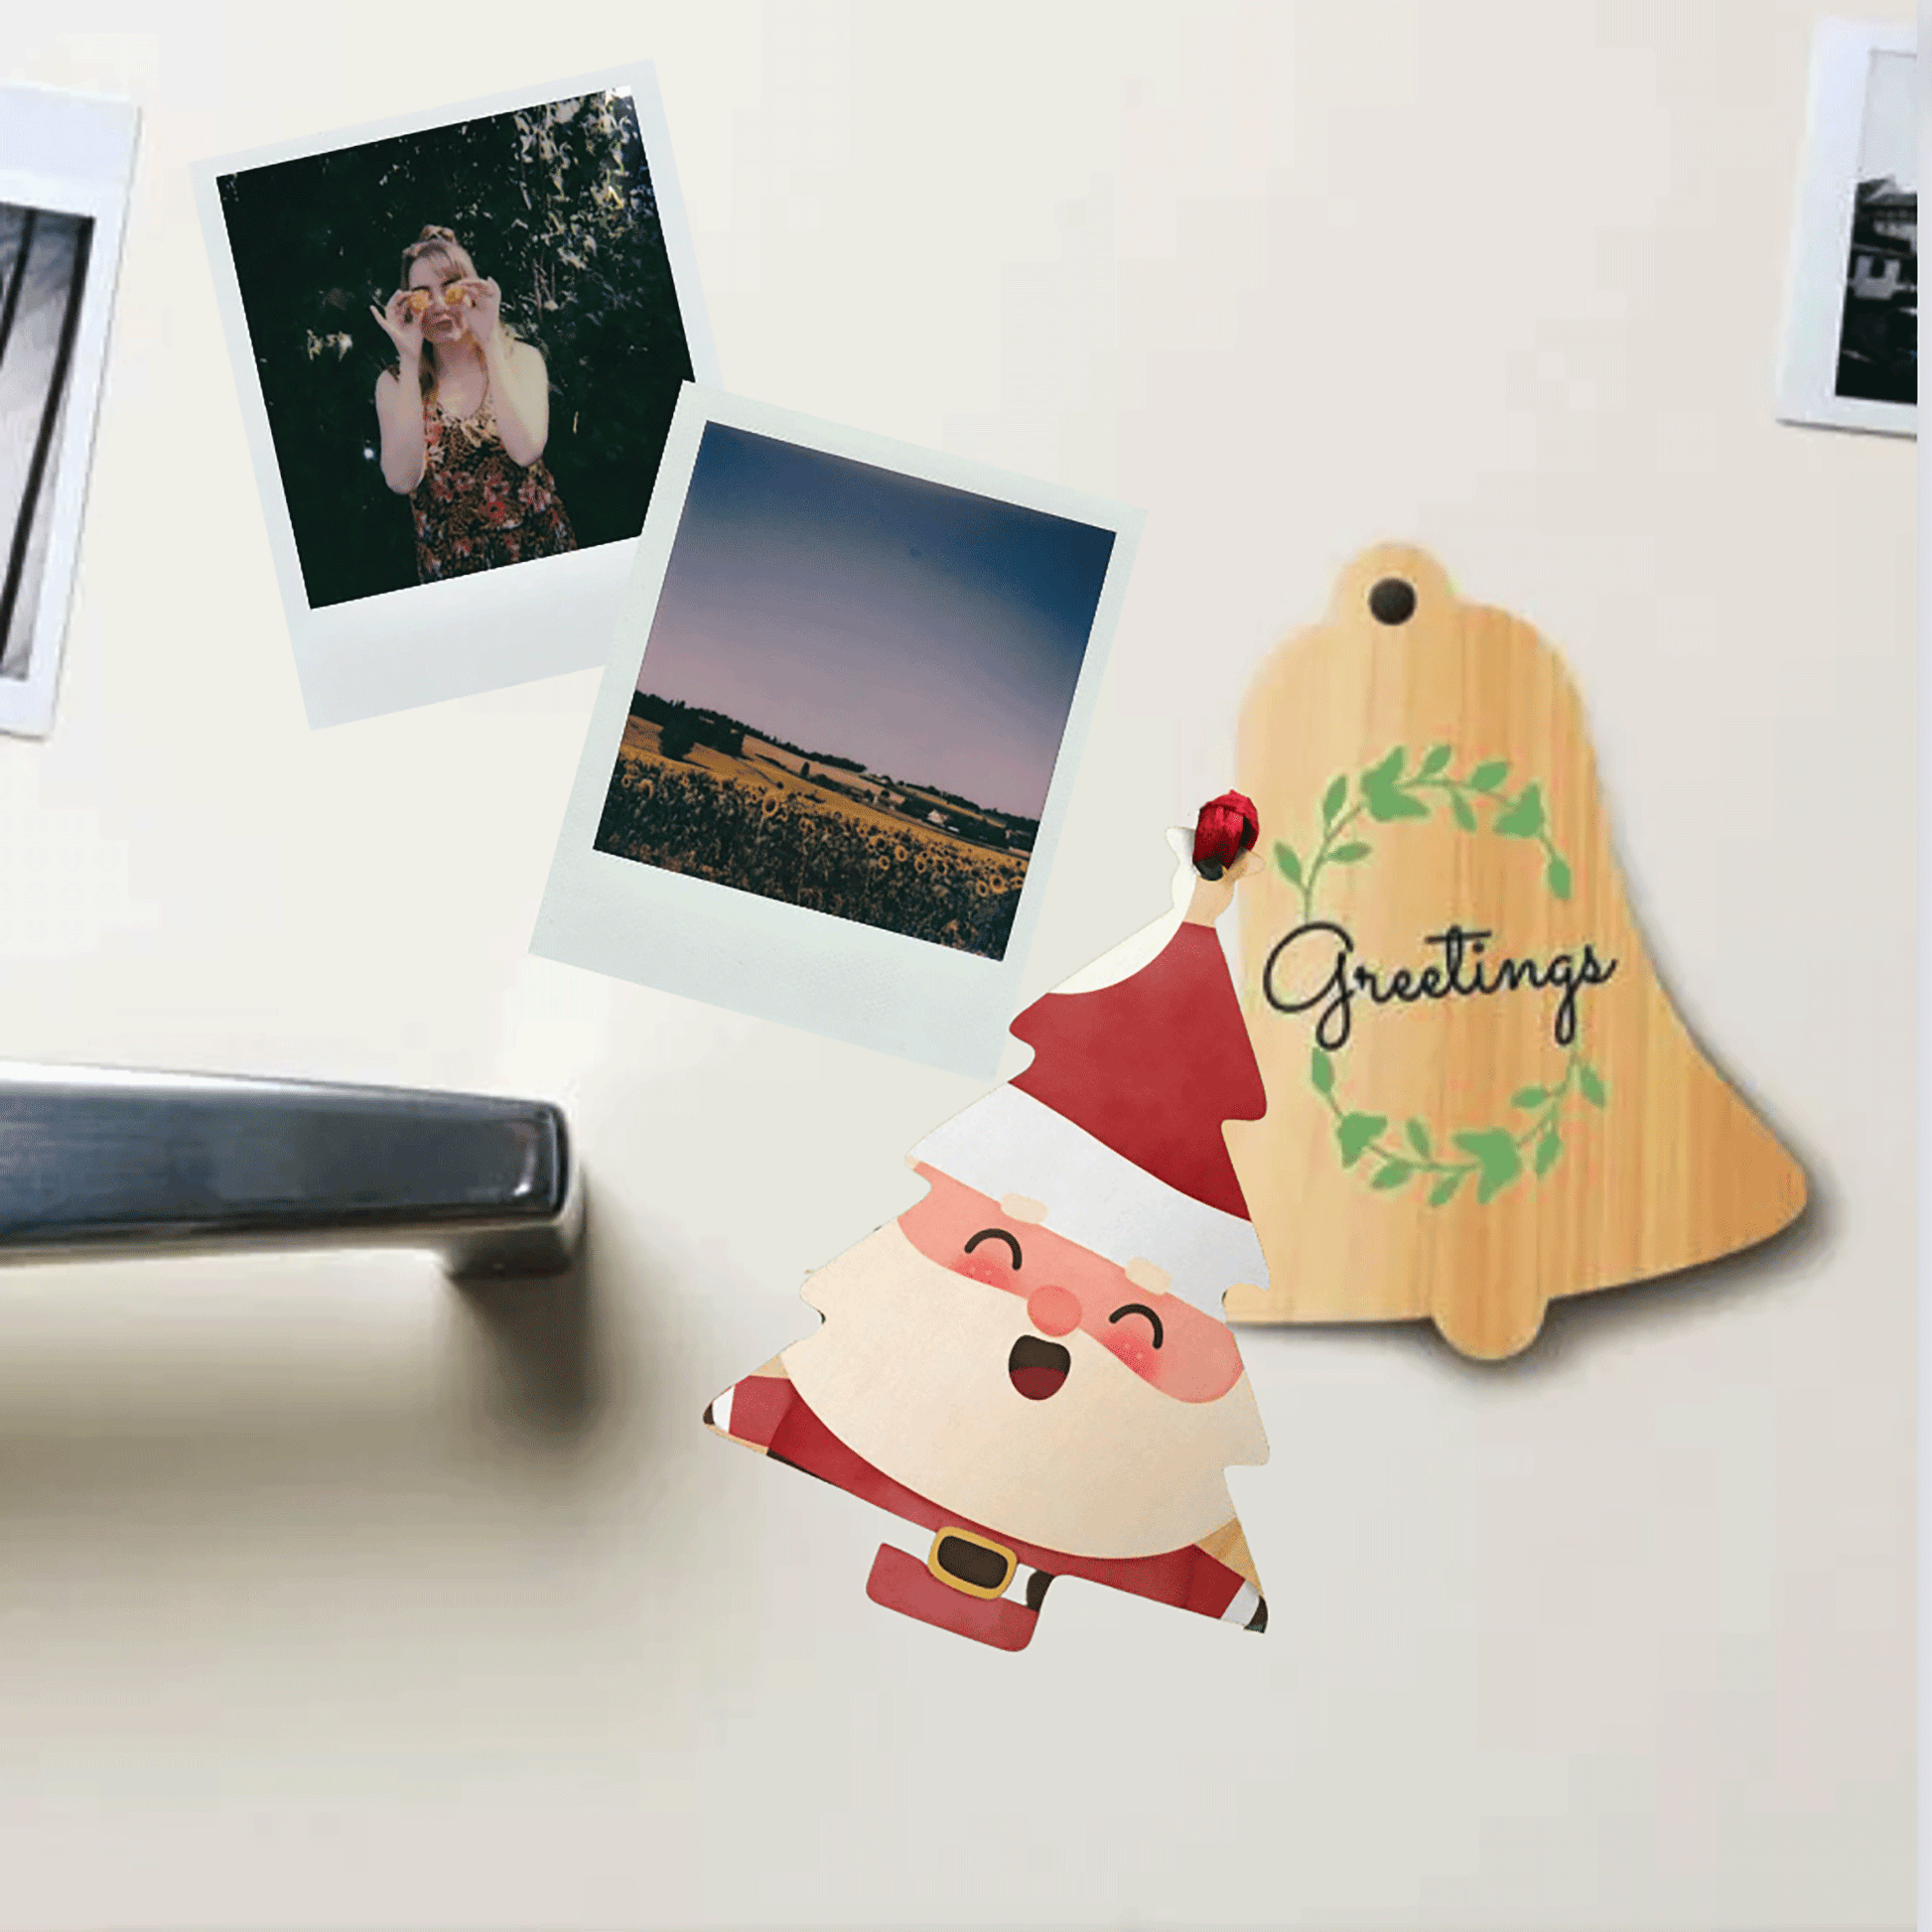 Wooden ornaments - HO HO HO Santa magnetic on fridge